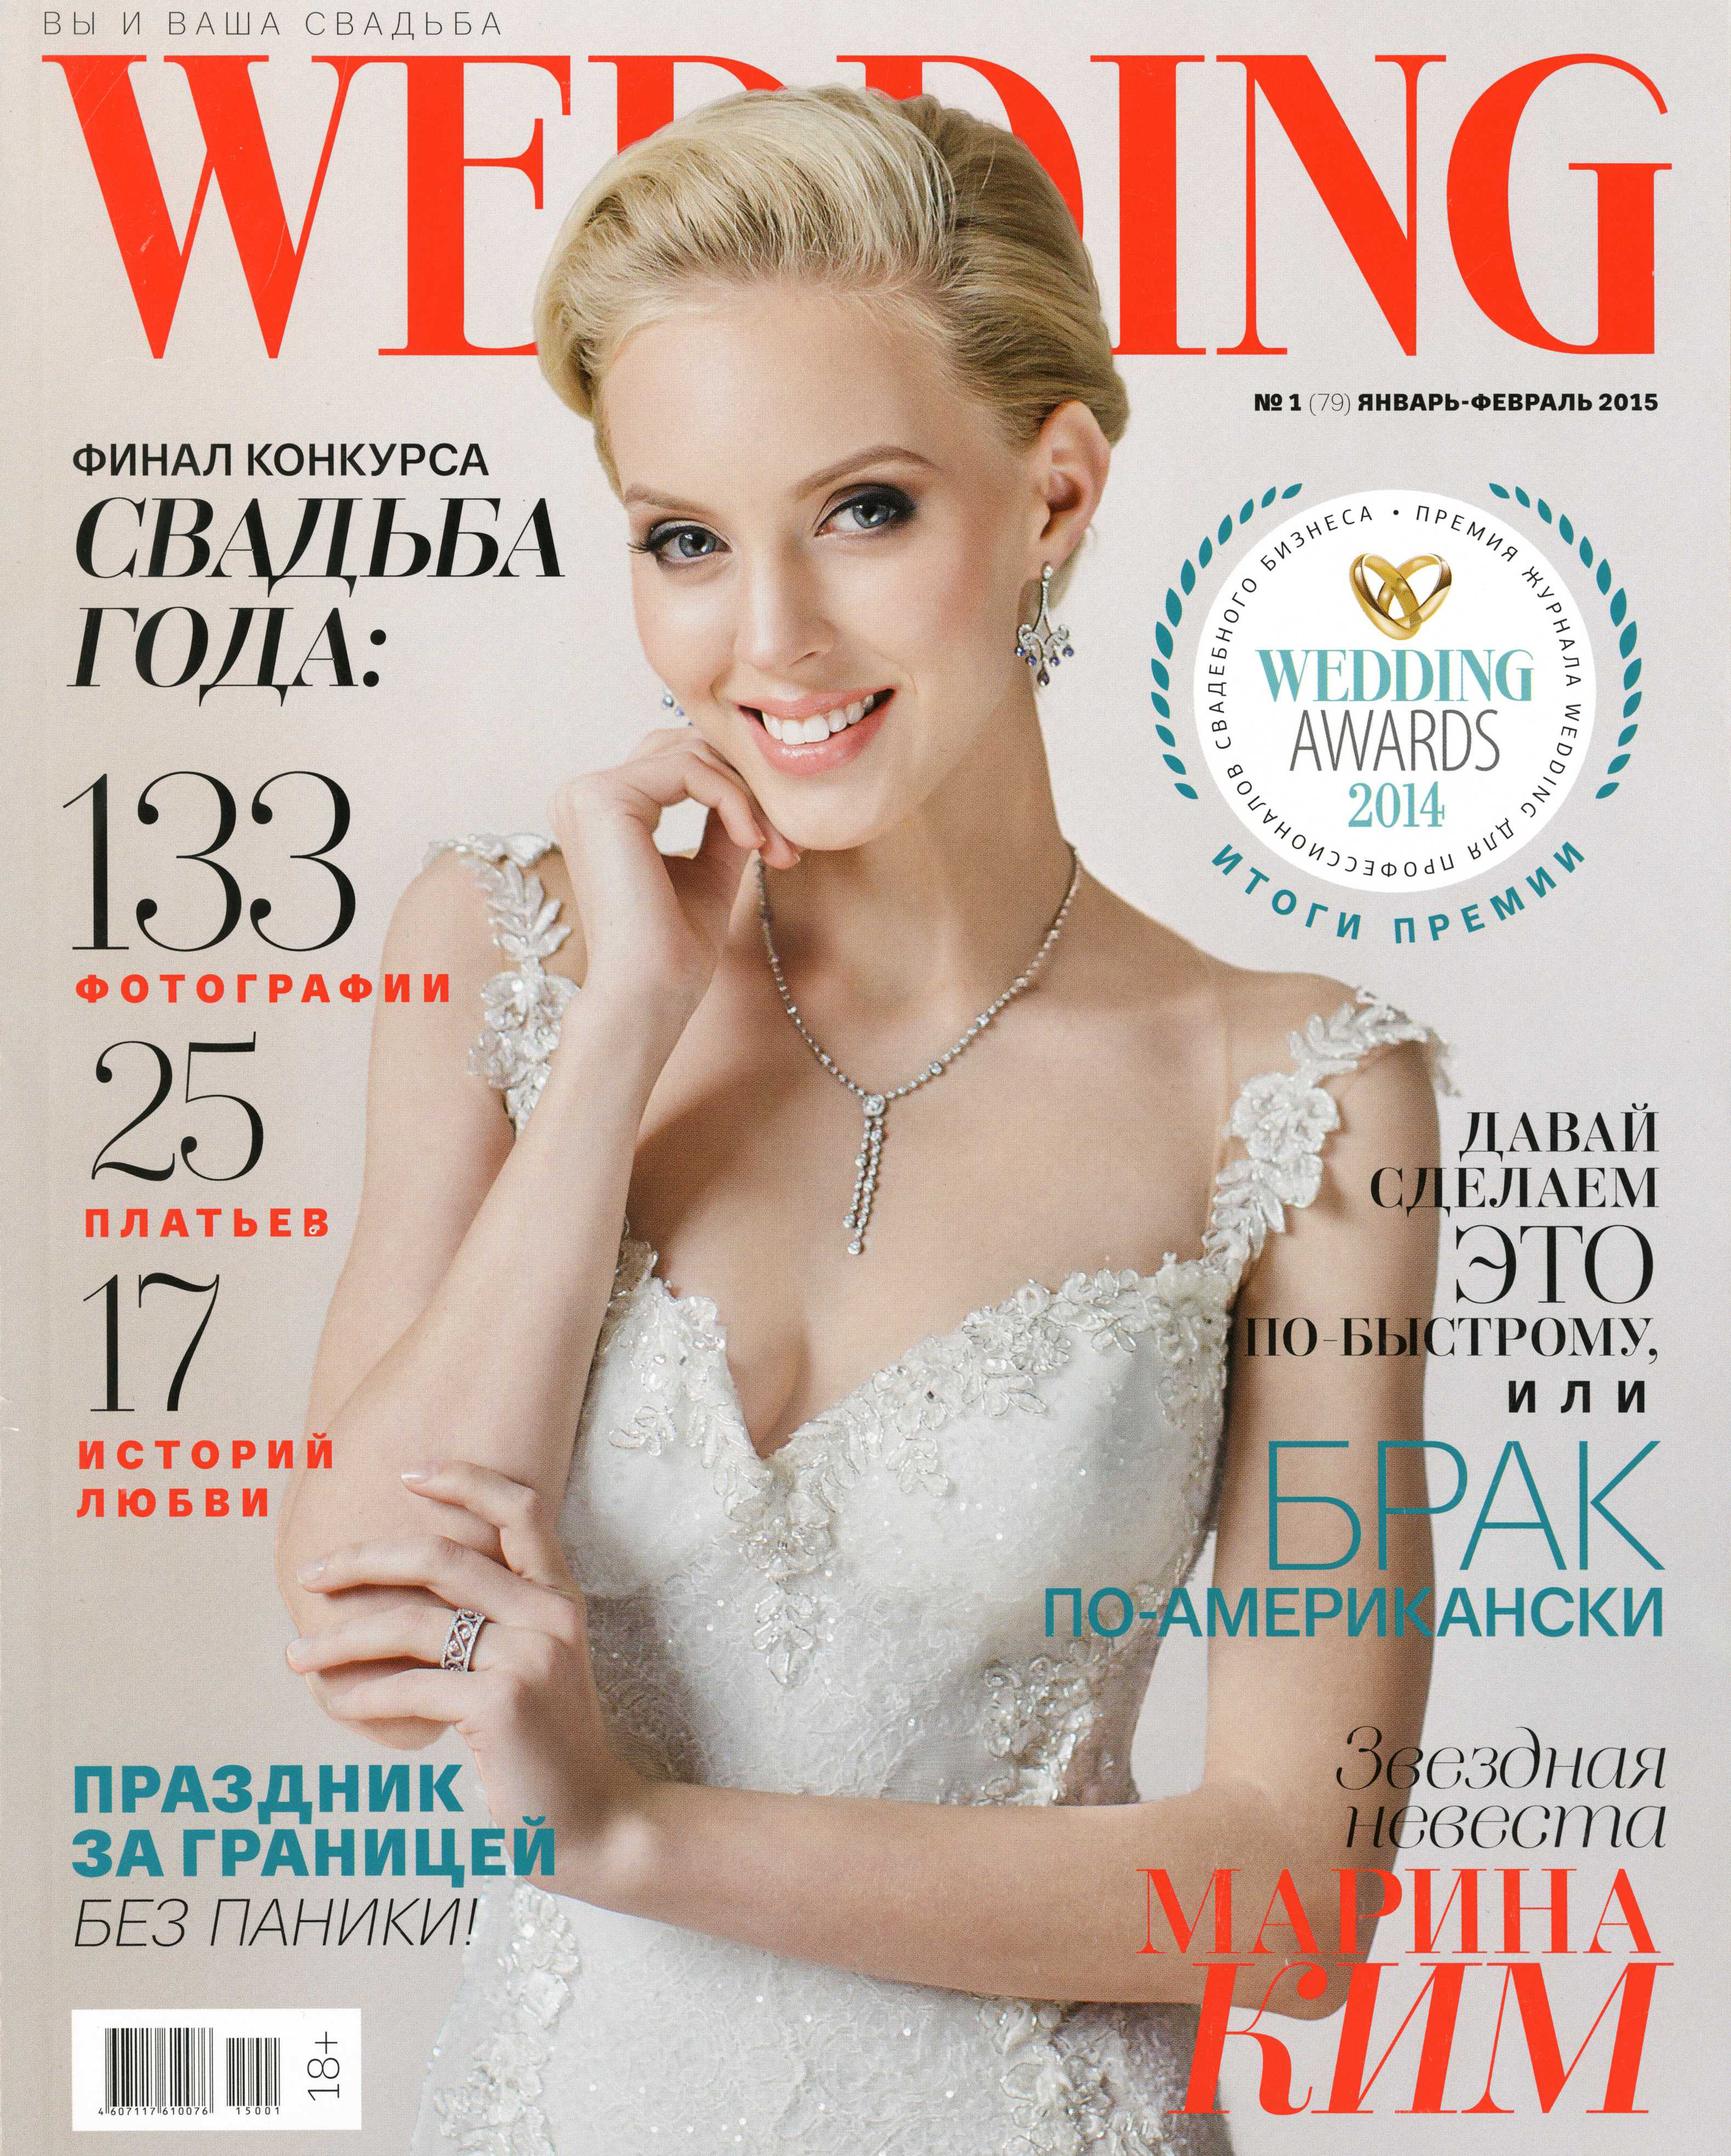 Обложка журнала Wedding